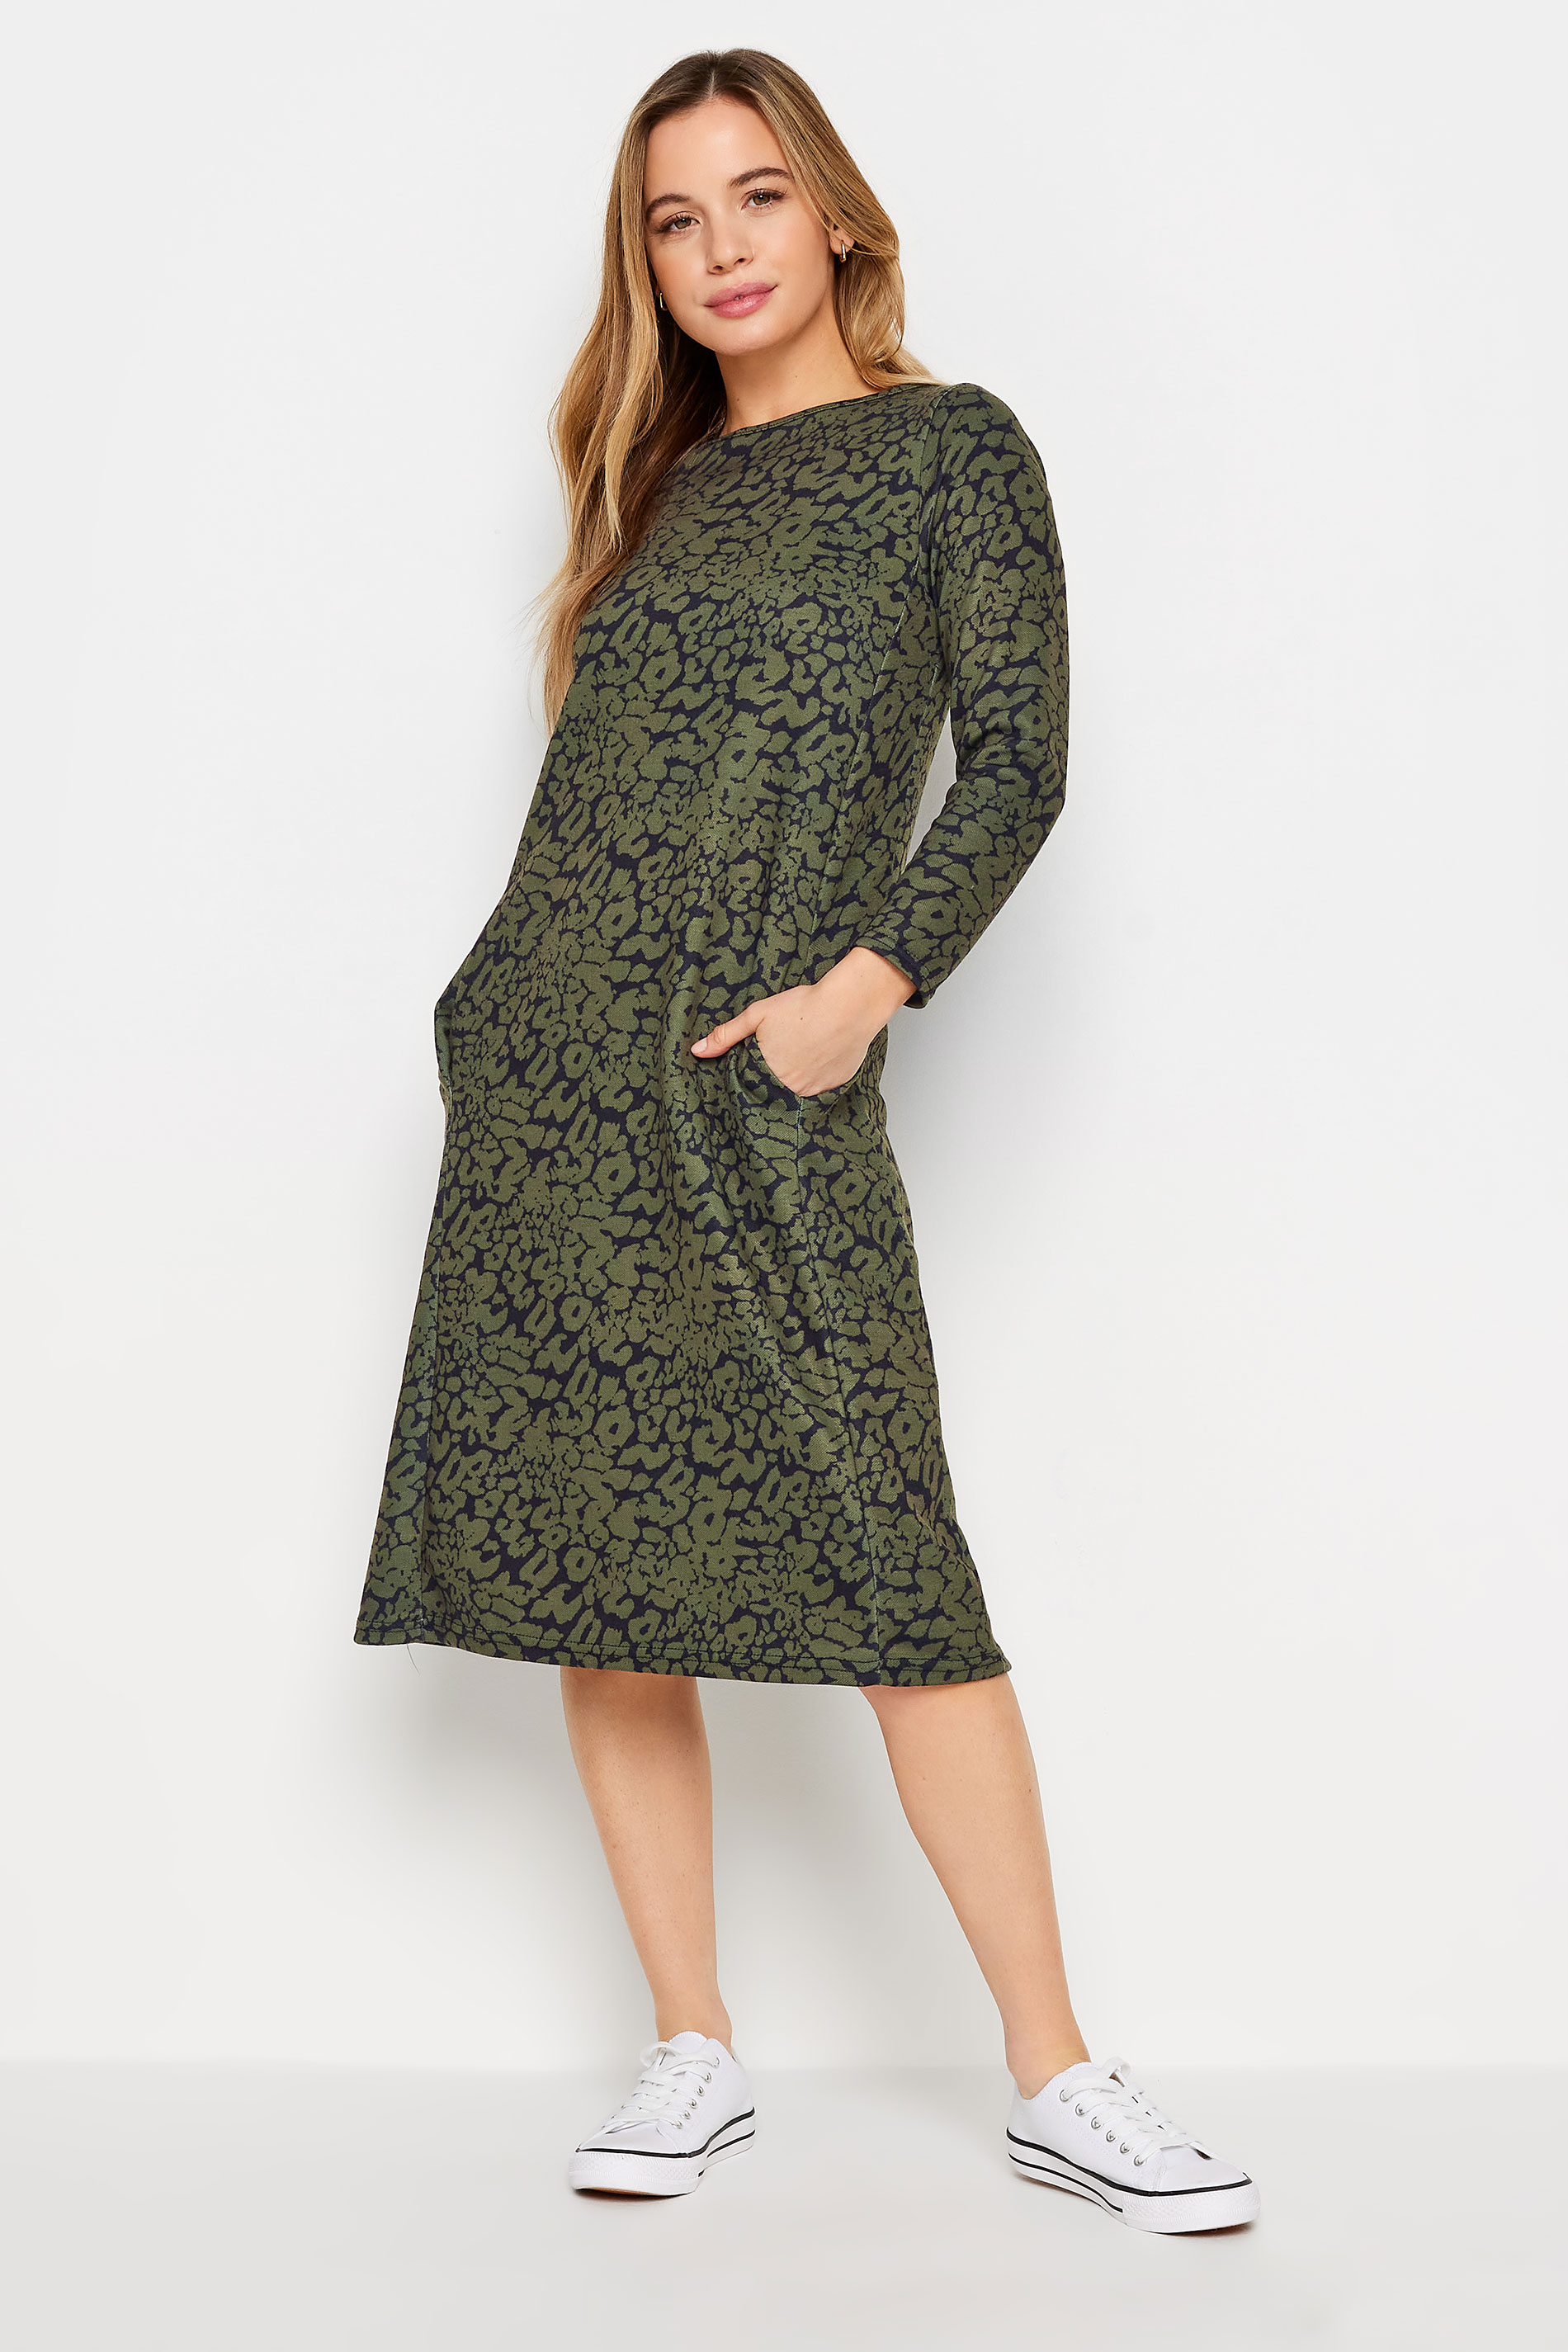 M&Co Petite Khaki Green Animal Print Ponte Swing Dress | M&Co 1